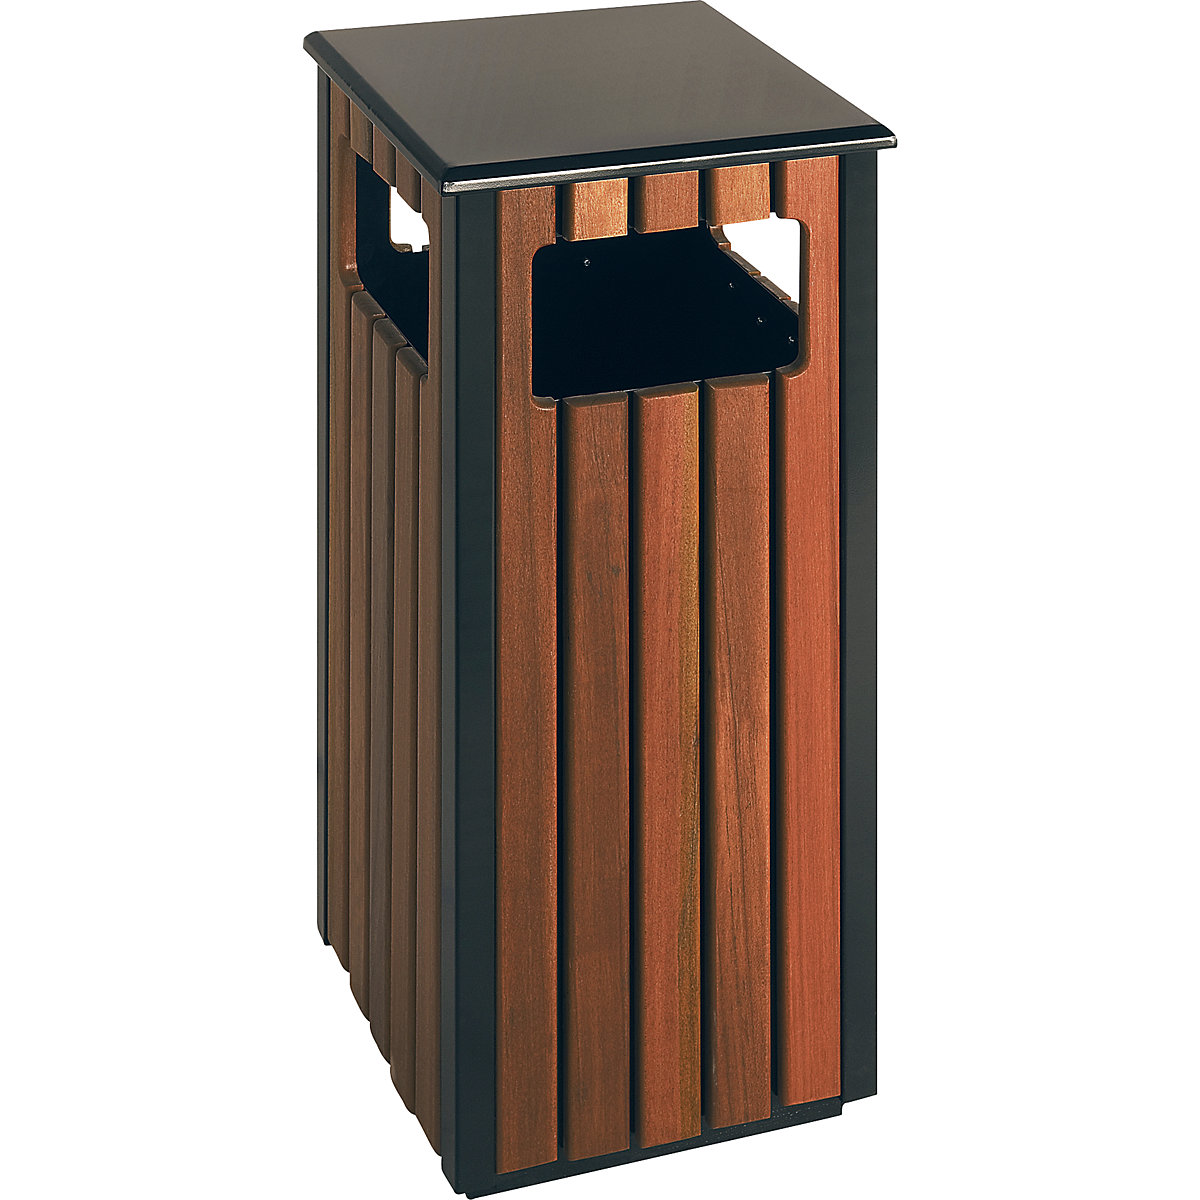 Colector de residuos para exteriores con aspecto de madera